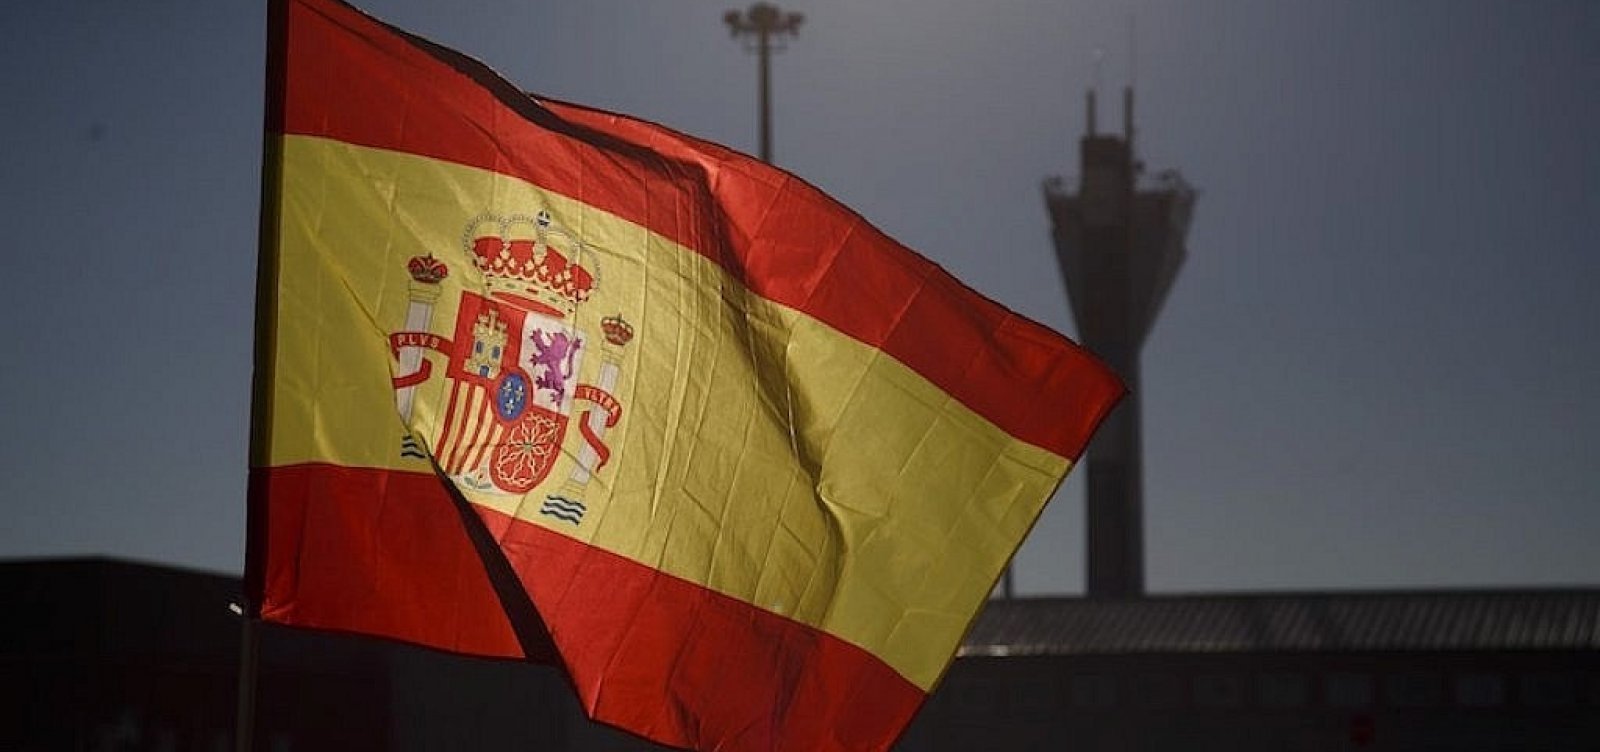 Após o país atingir 1 milhão de casos de covid-19, governo espanhol decreta estado de alarme 